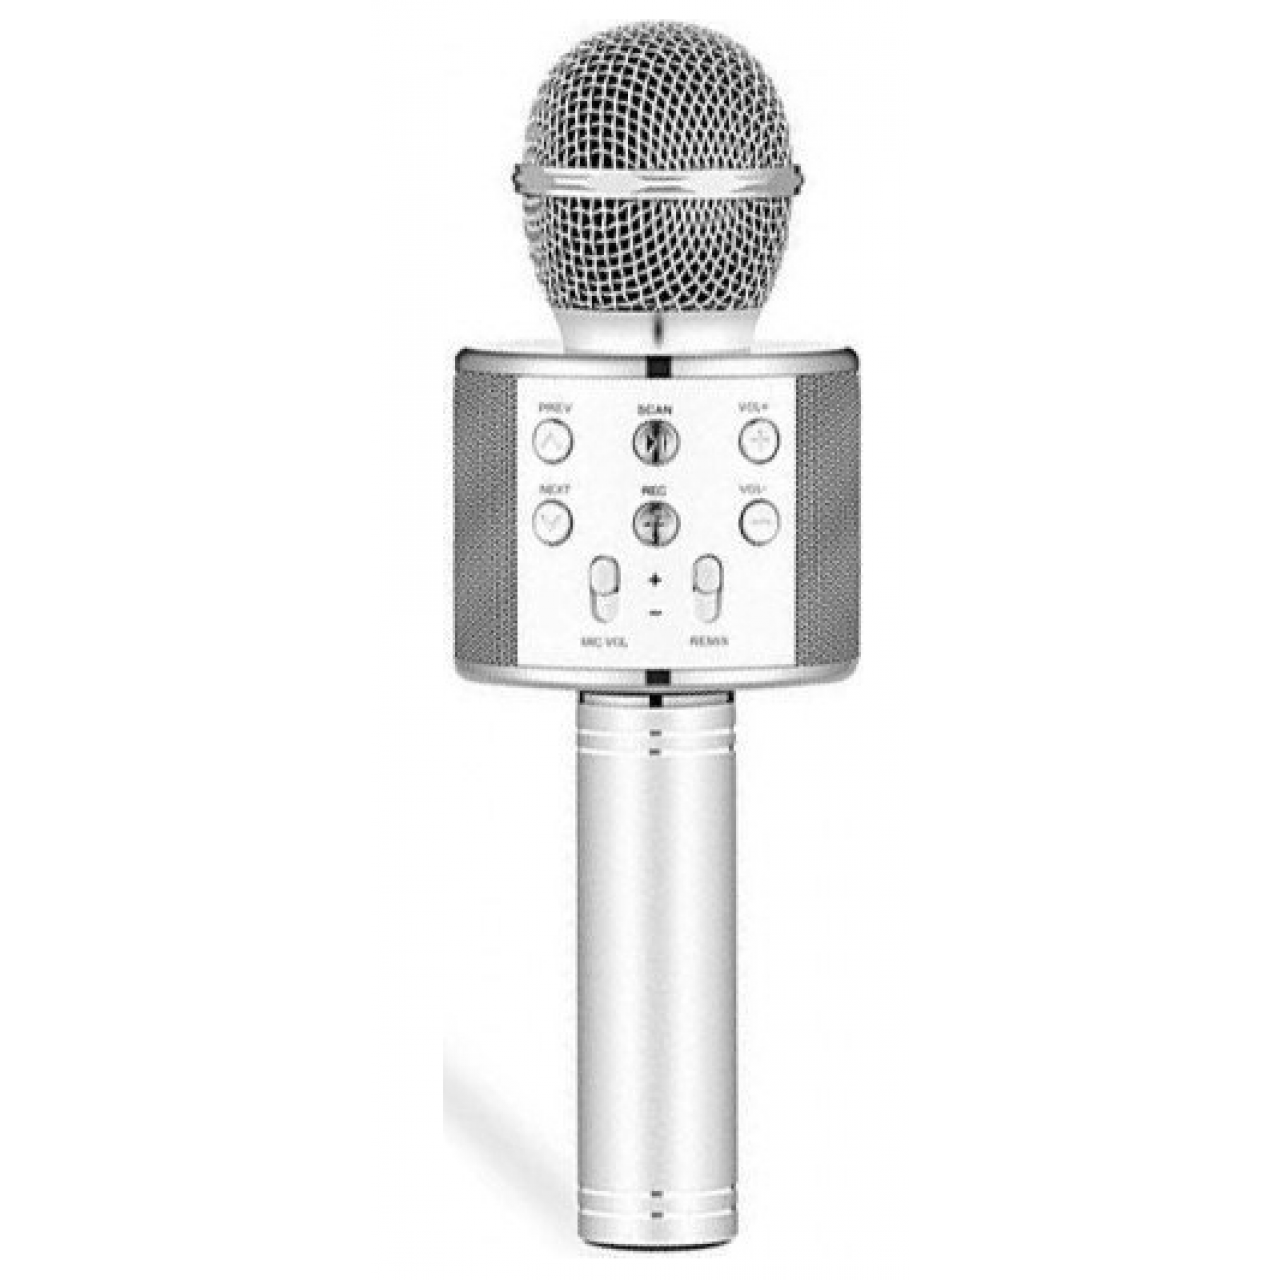 Ασύρματο Μικρόφωνο Bluetooth με Ενσωματωμένο Ηχείο και Karaoke WS-858 - Ασημί - 5794